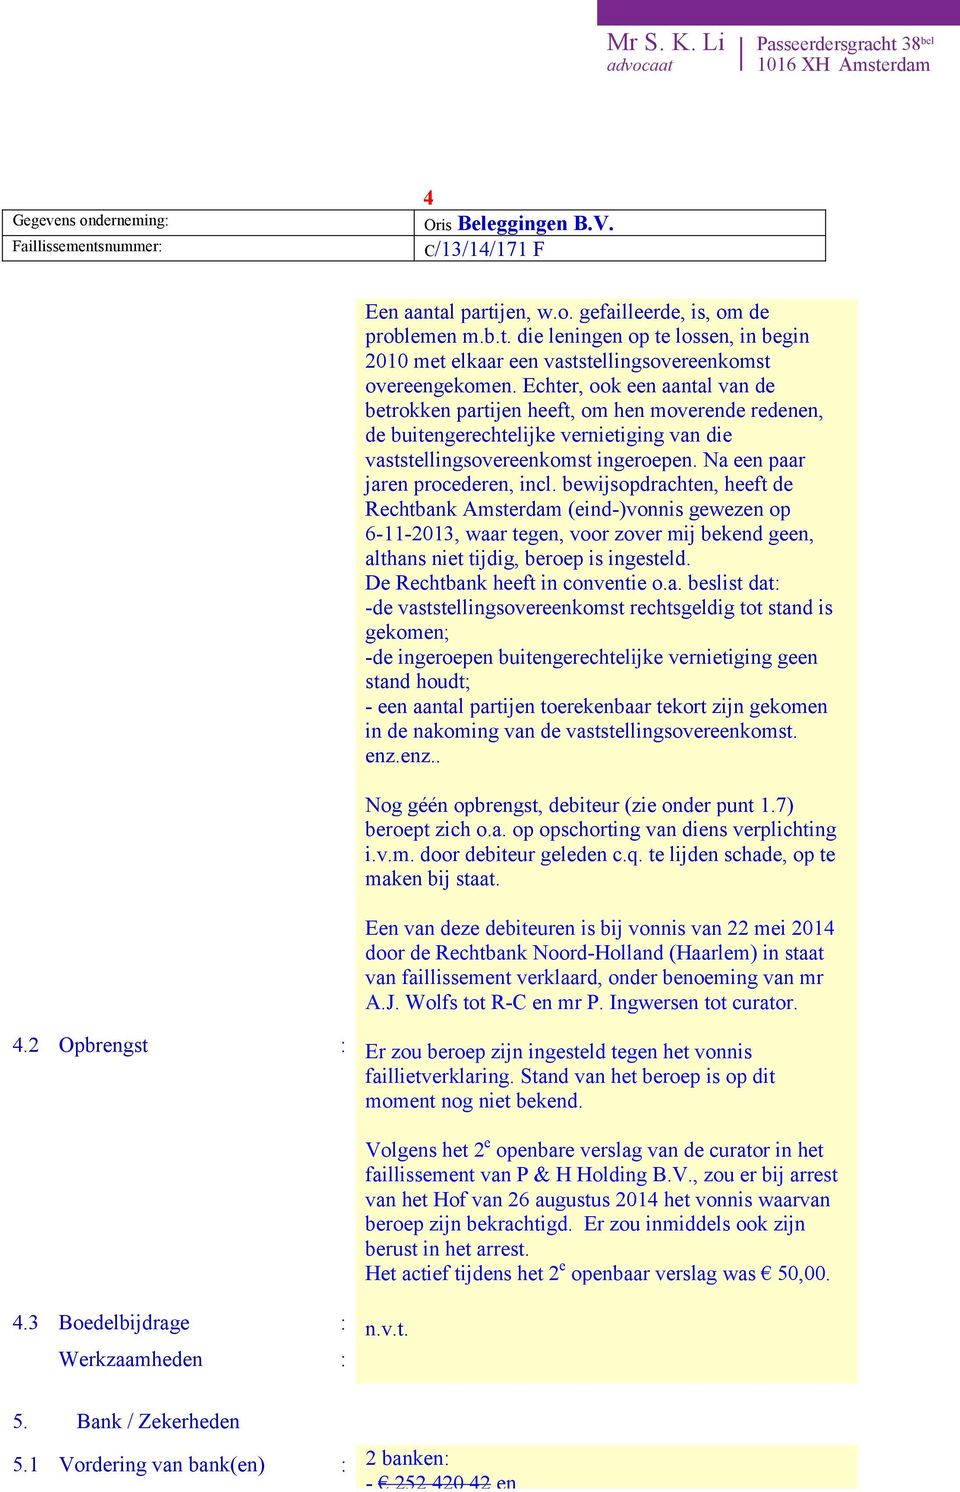 bewijsopdrachten, heeft de Rechtbank Amsterdam (eind-)vonnis gewezen op 6-11-2013, waar tegen, voor zover mij bekend geen, althans niet tijdig, beroep is ingesteld. De Rechtbank heeft in conventie o.